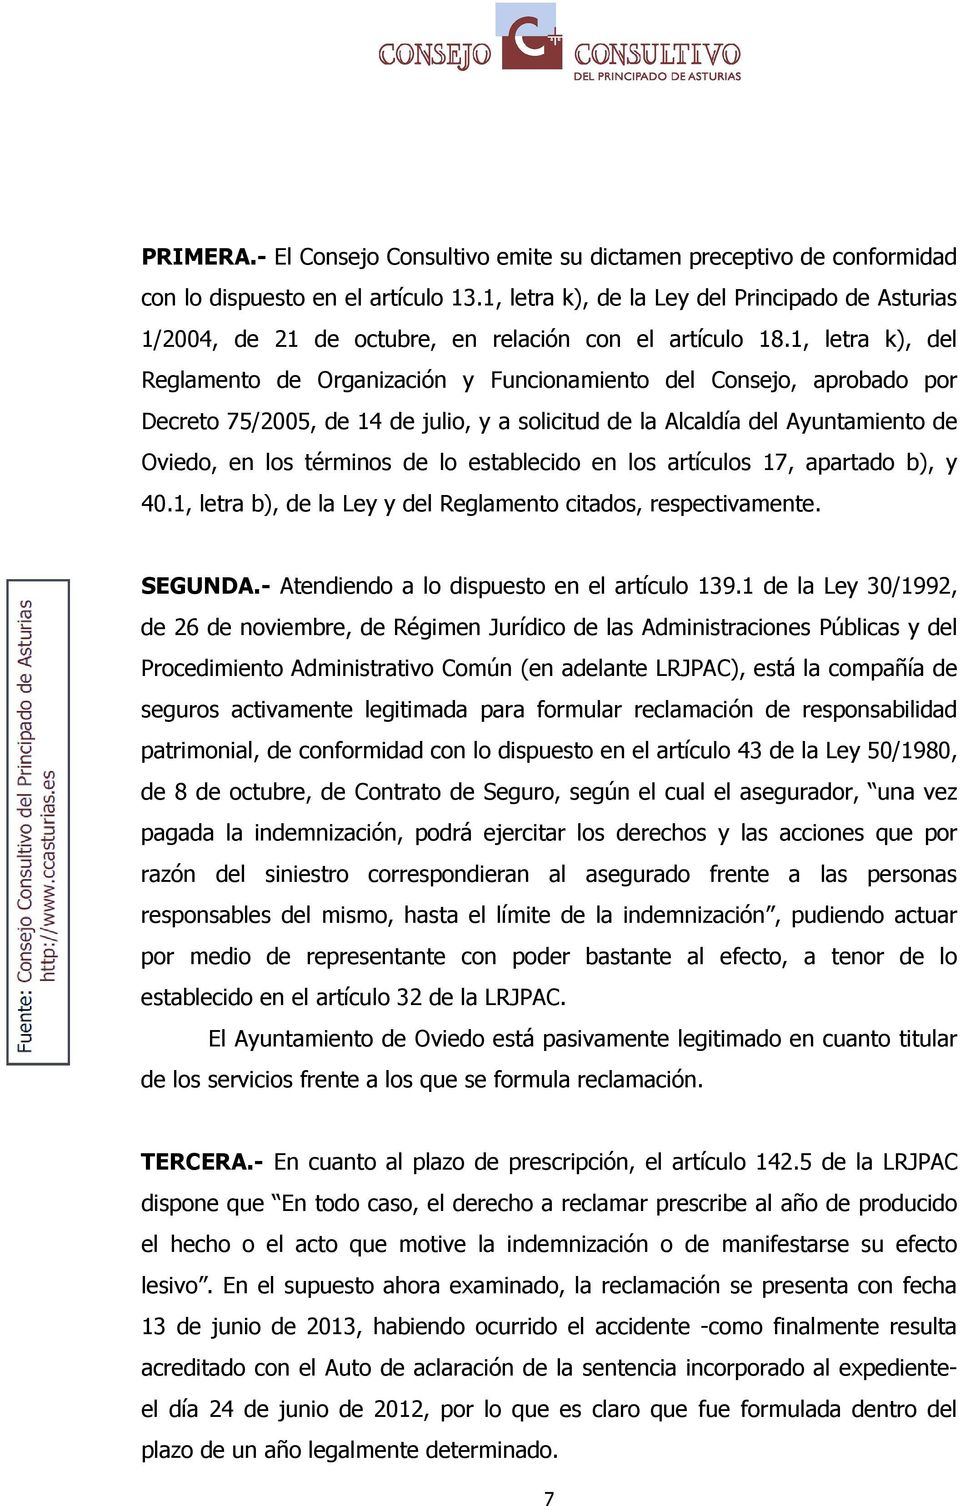 1, letra k), del Reglamento de Organización y Funcionamiento del Consejo, aprobado por Decreto 75/2005, de 14 de julio, y a solicitud de la Alcaldía del Ayuntamiento de Oviedo, en los términos de lo